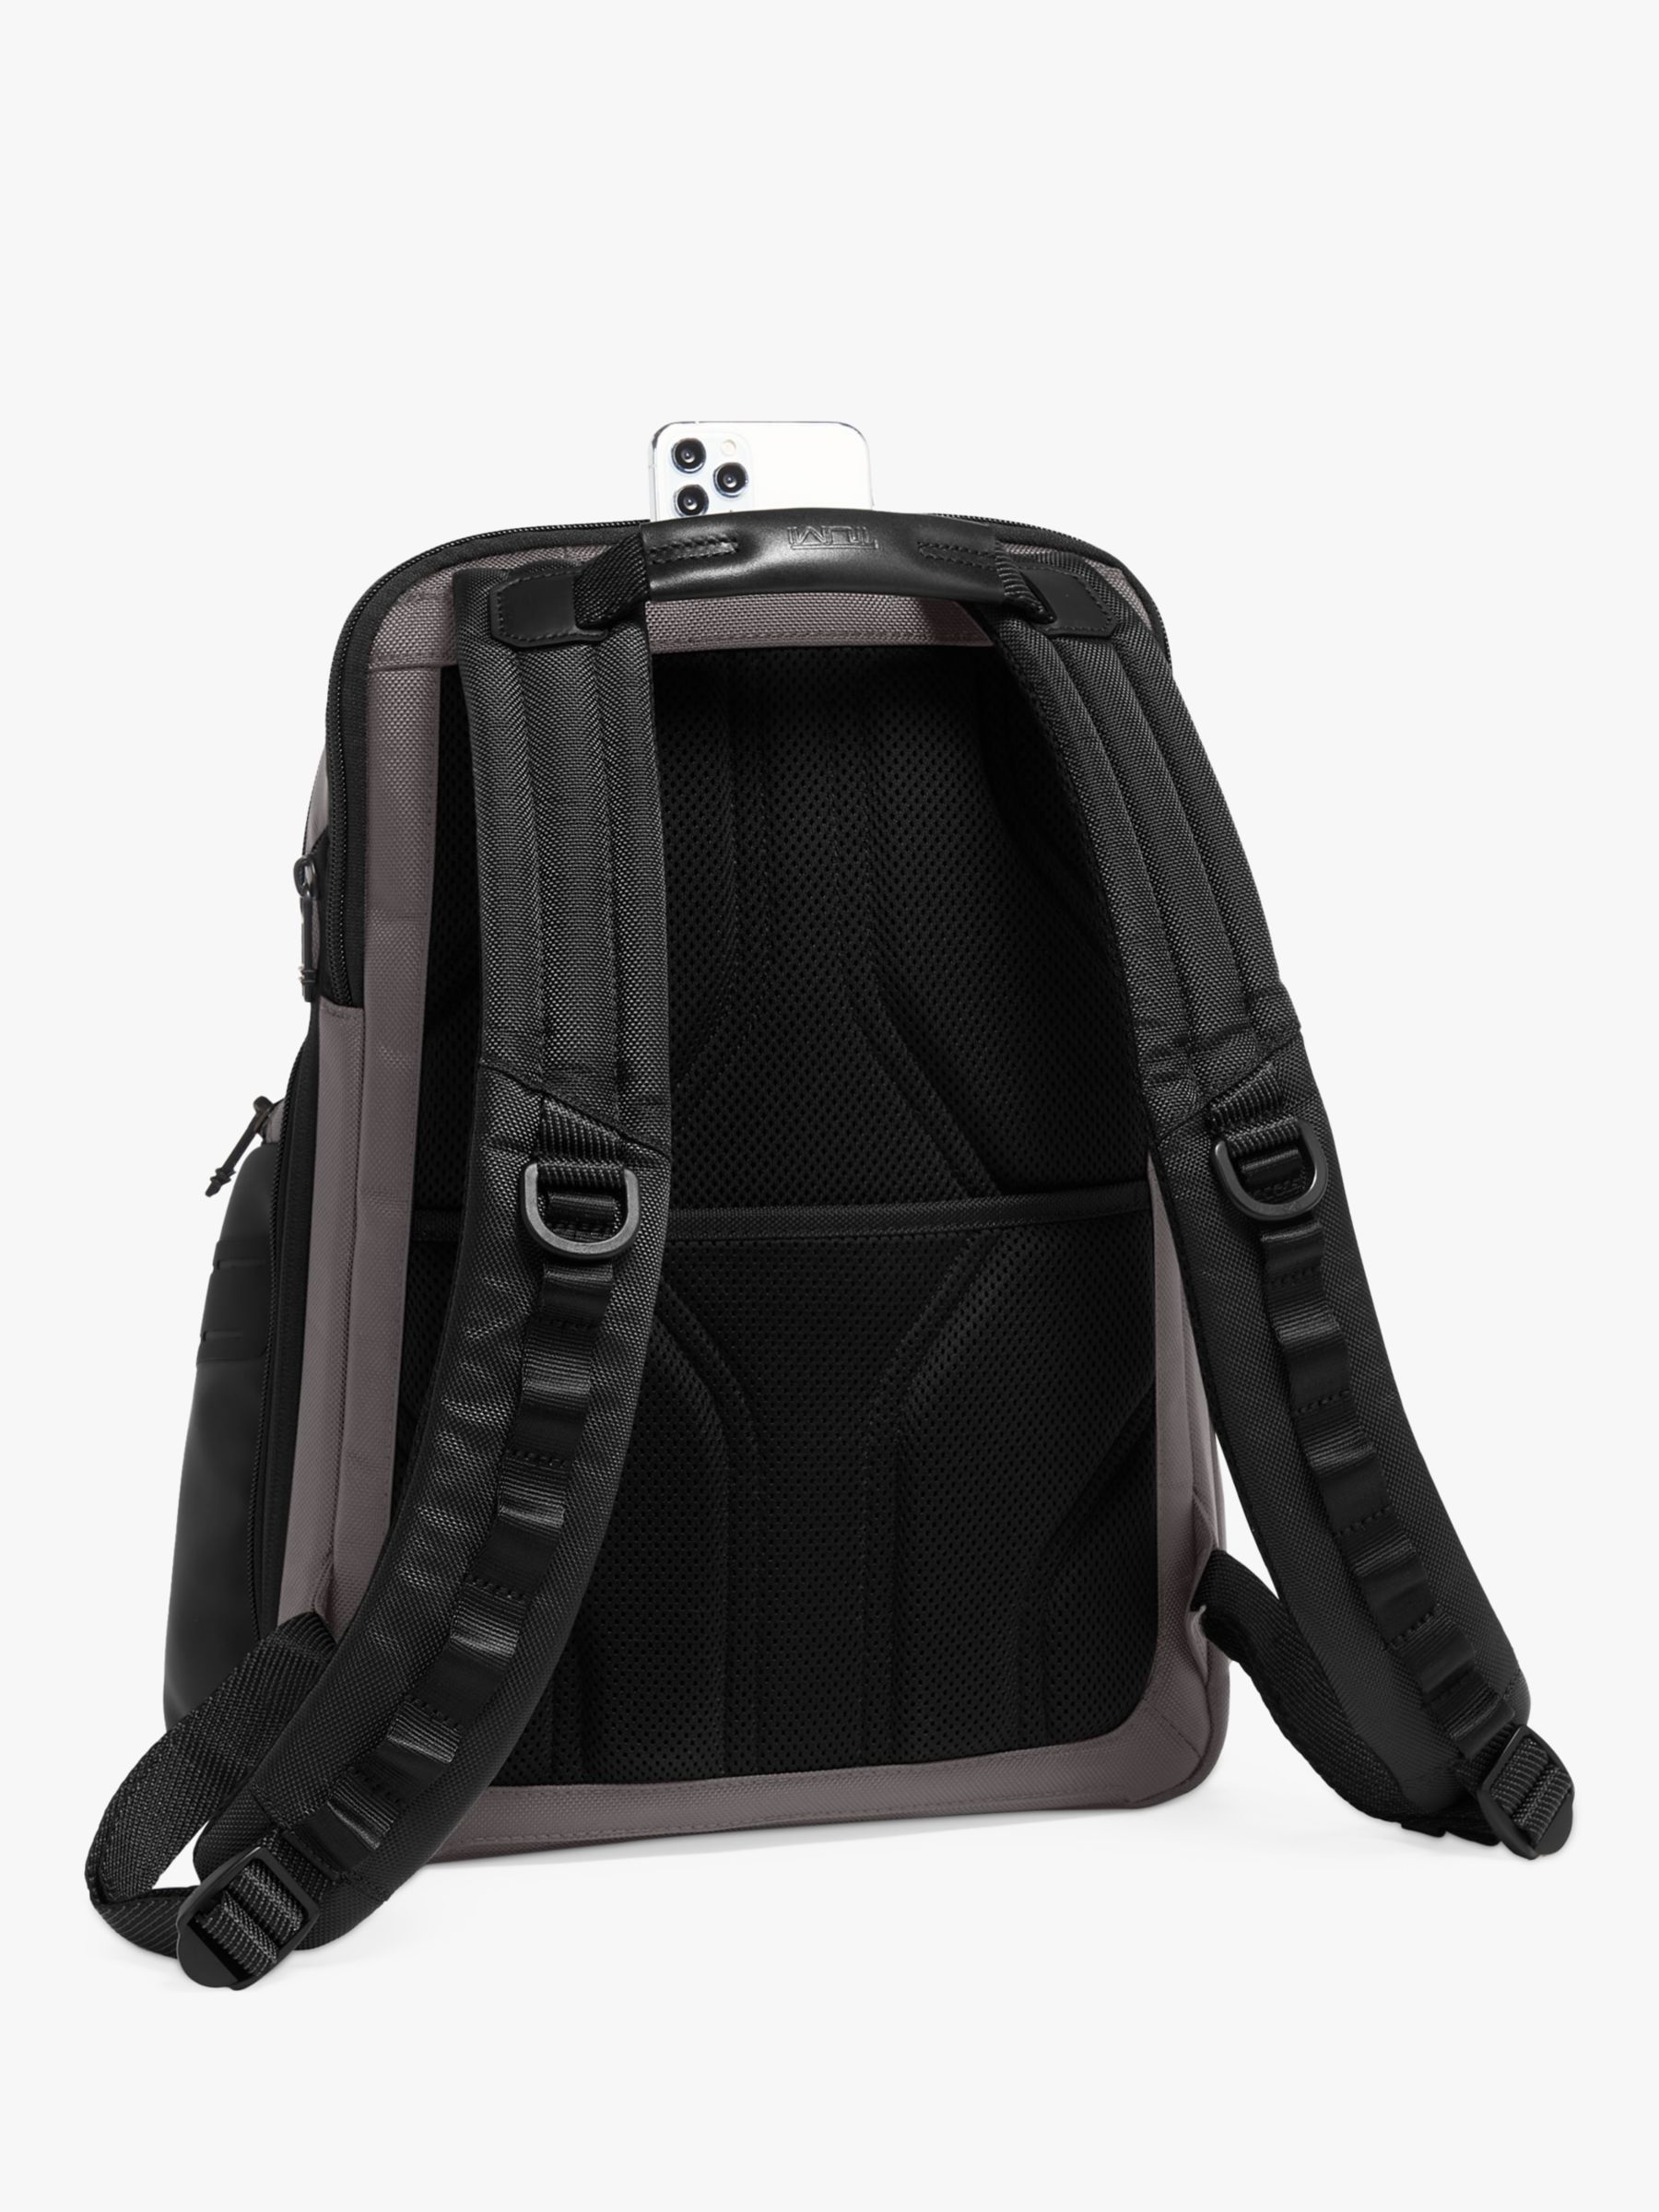 TUMI Navigation Backpack, Charcoal at John Lewis & Partners